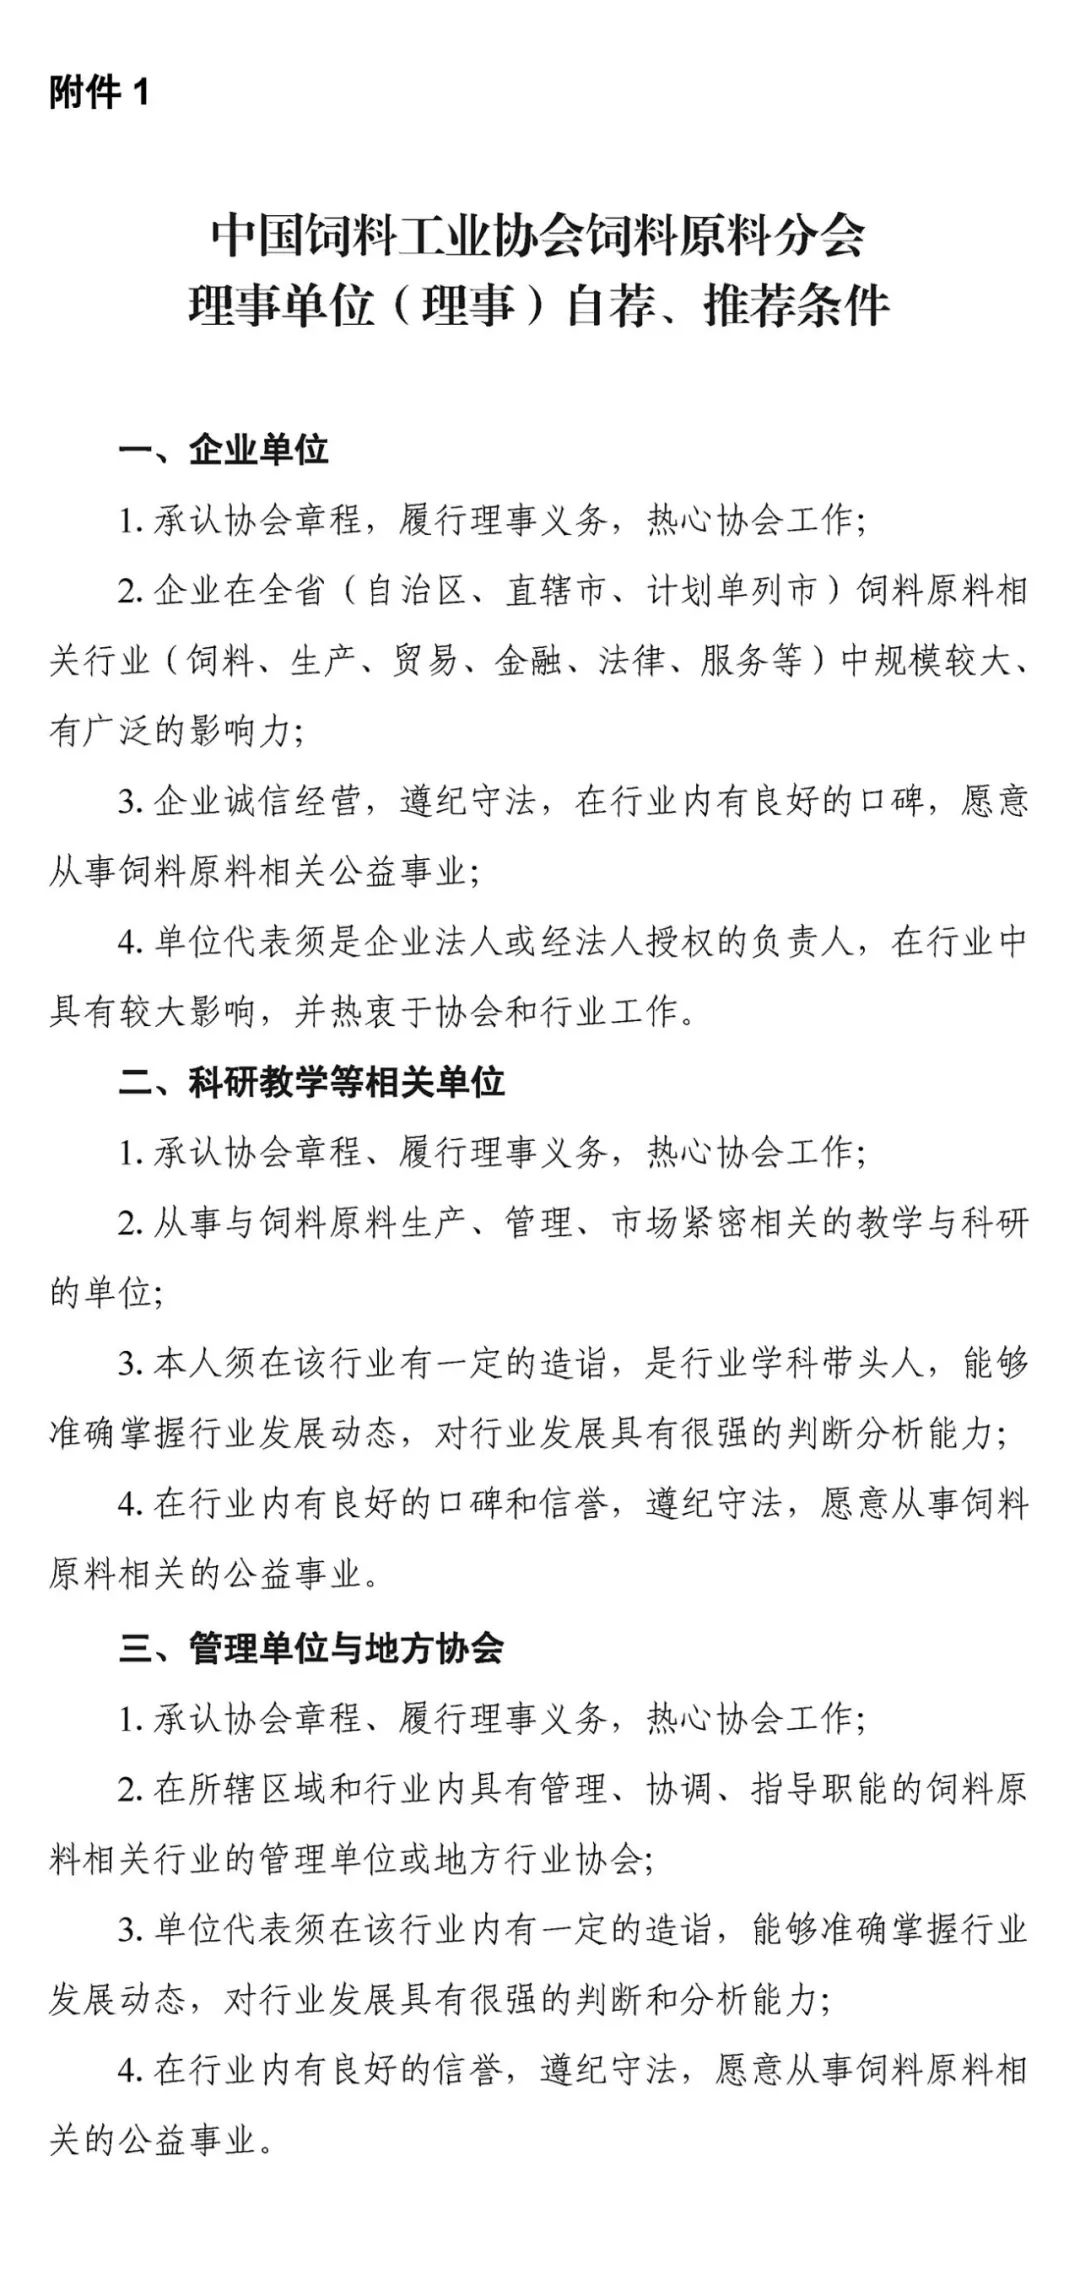 关于自荐、推荐中国饲料工业协会饲料原料分会第一届理事会理事候选单位、理事候选人的通知